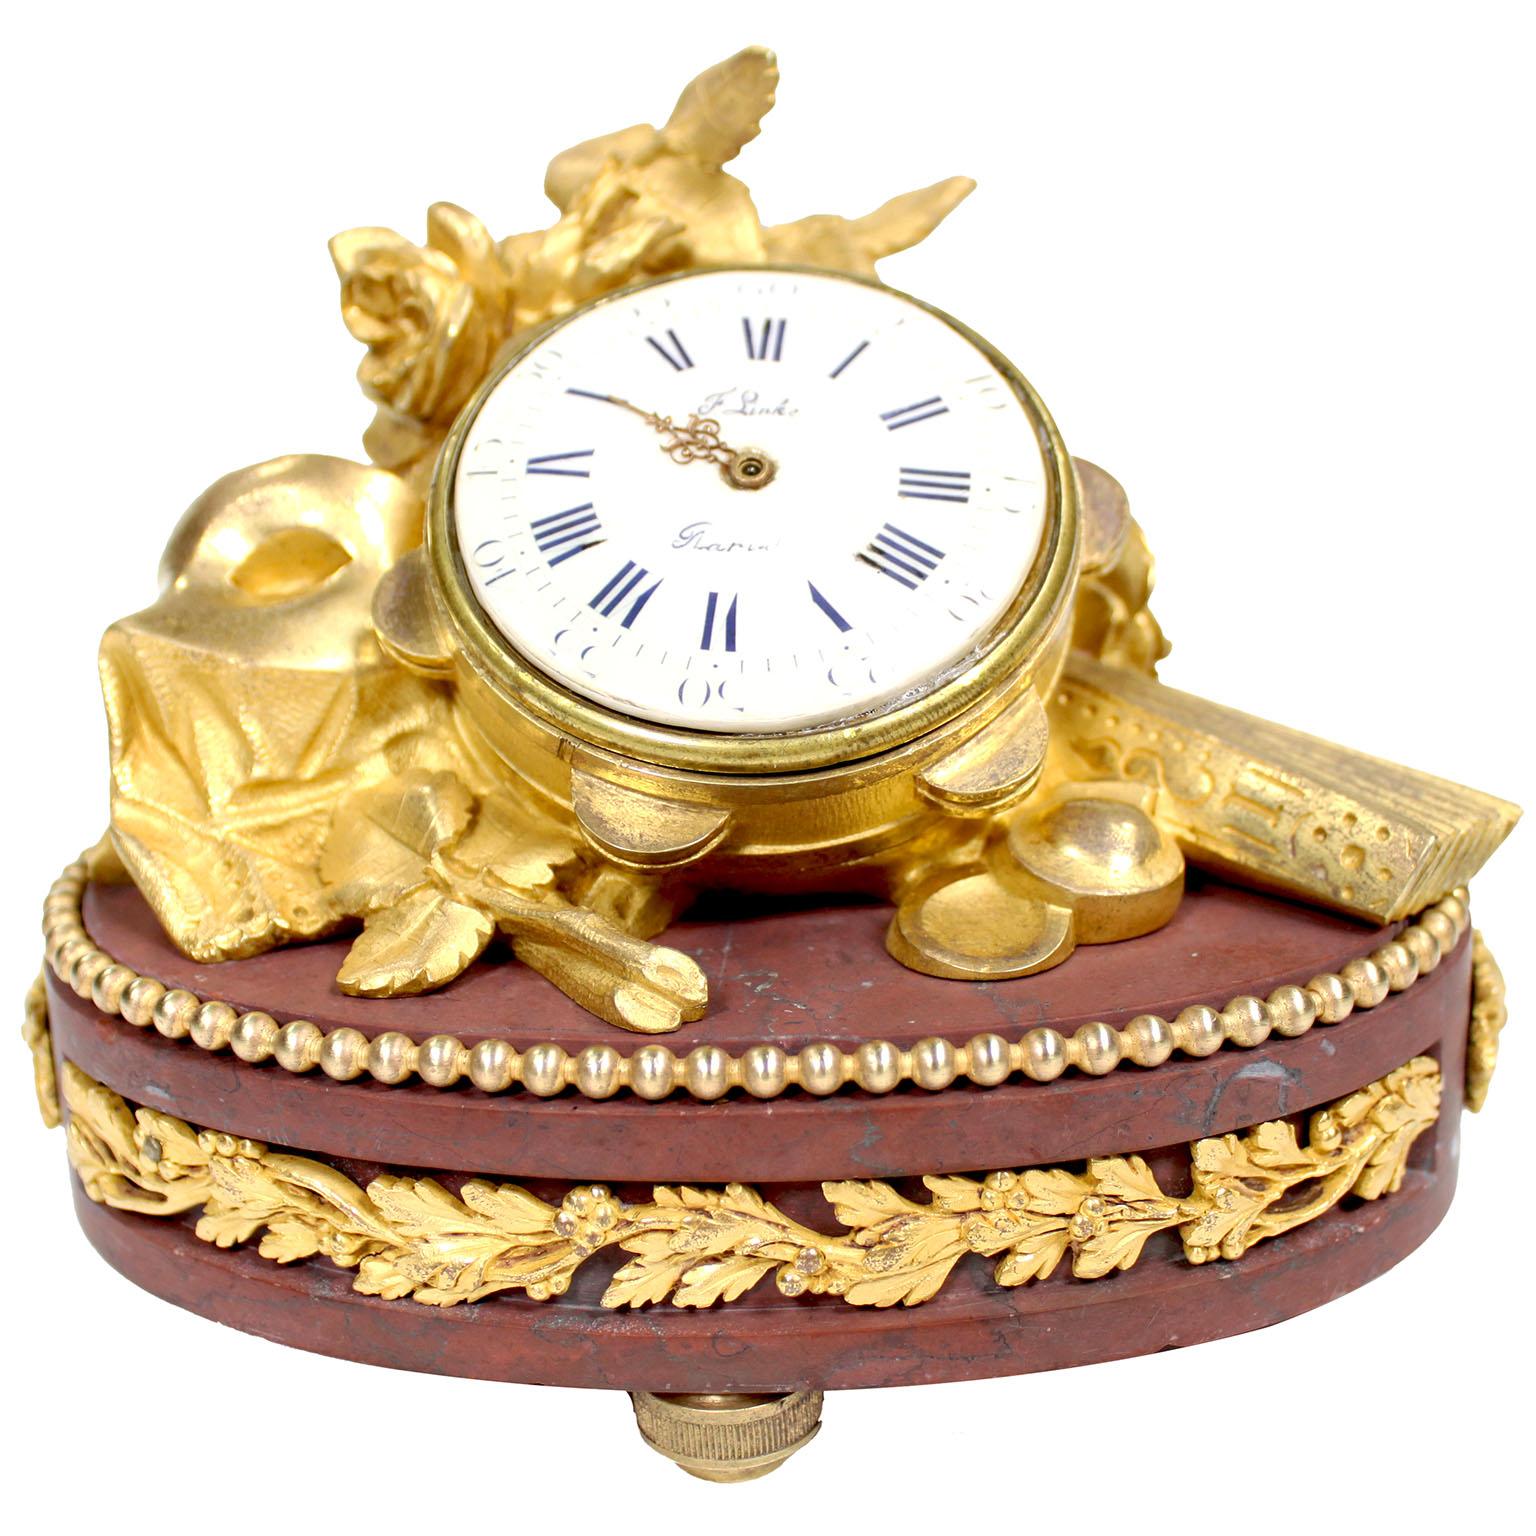 Pendule de table en bronze doré et marbre rouge griotte de François Linke (1855-1946) du XIXe siècle. Numéro d'index 86. Le boîtier de la pendule est orné d'un tambourin au milieu de roses en fleurs, d'un masque et d'un éventail, sur un socle ovale